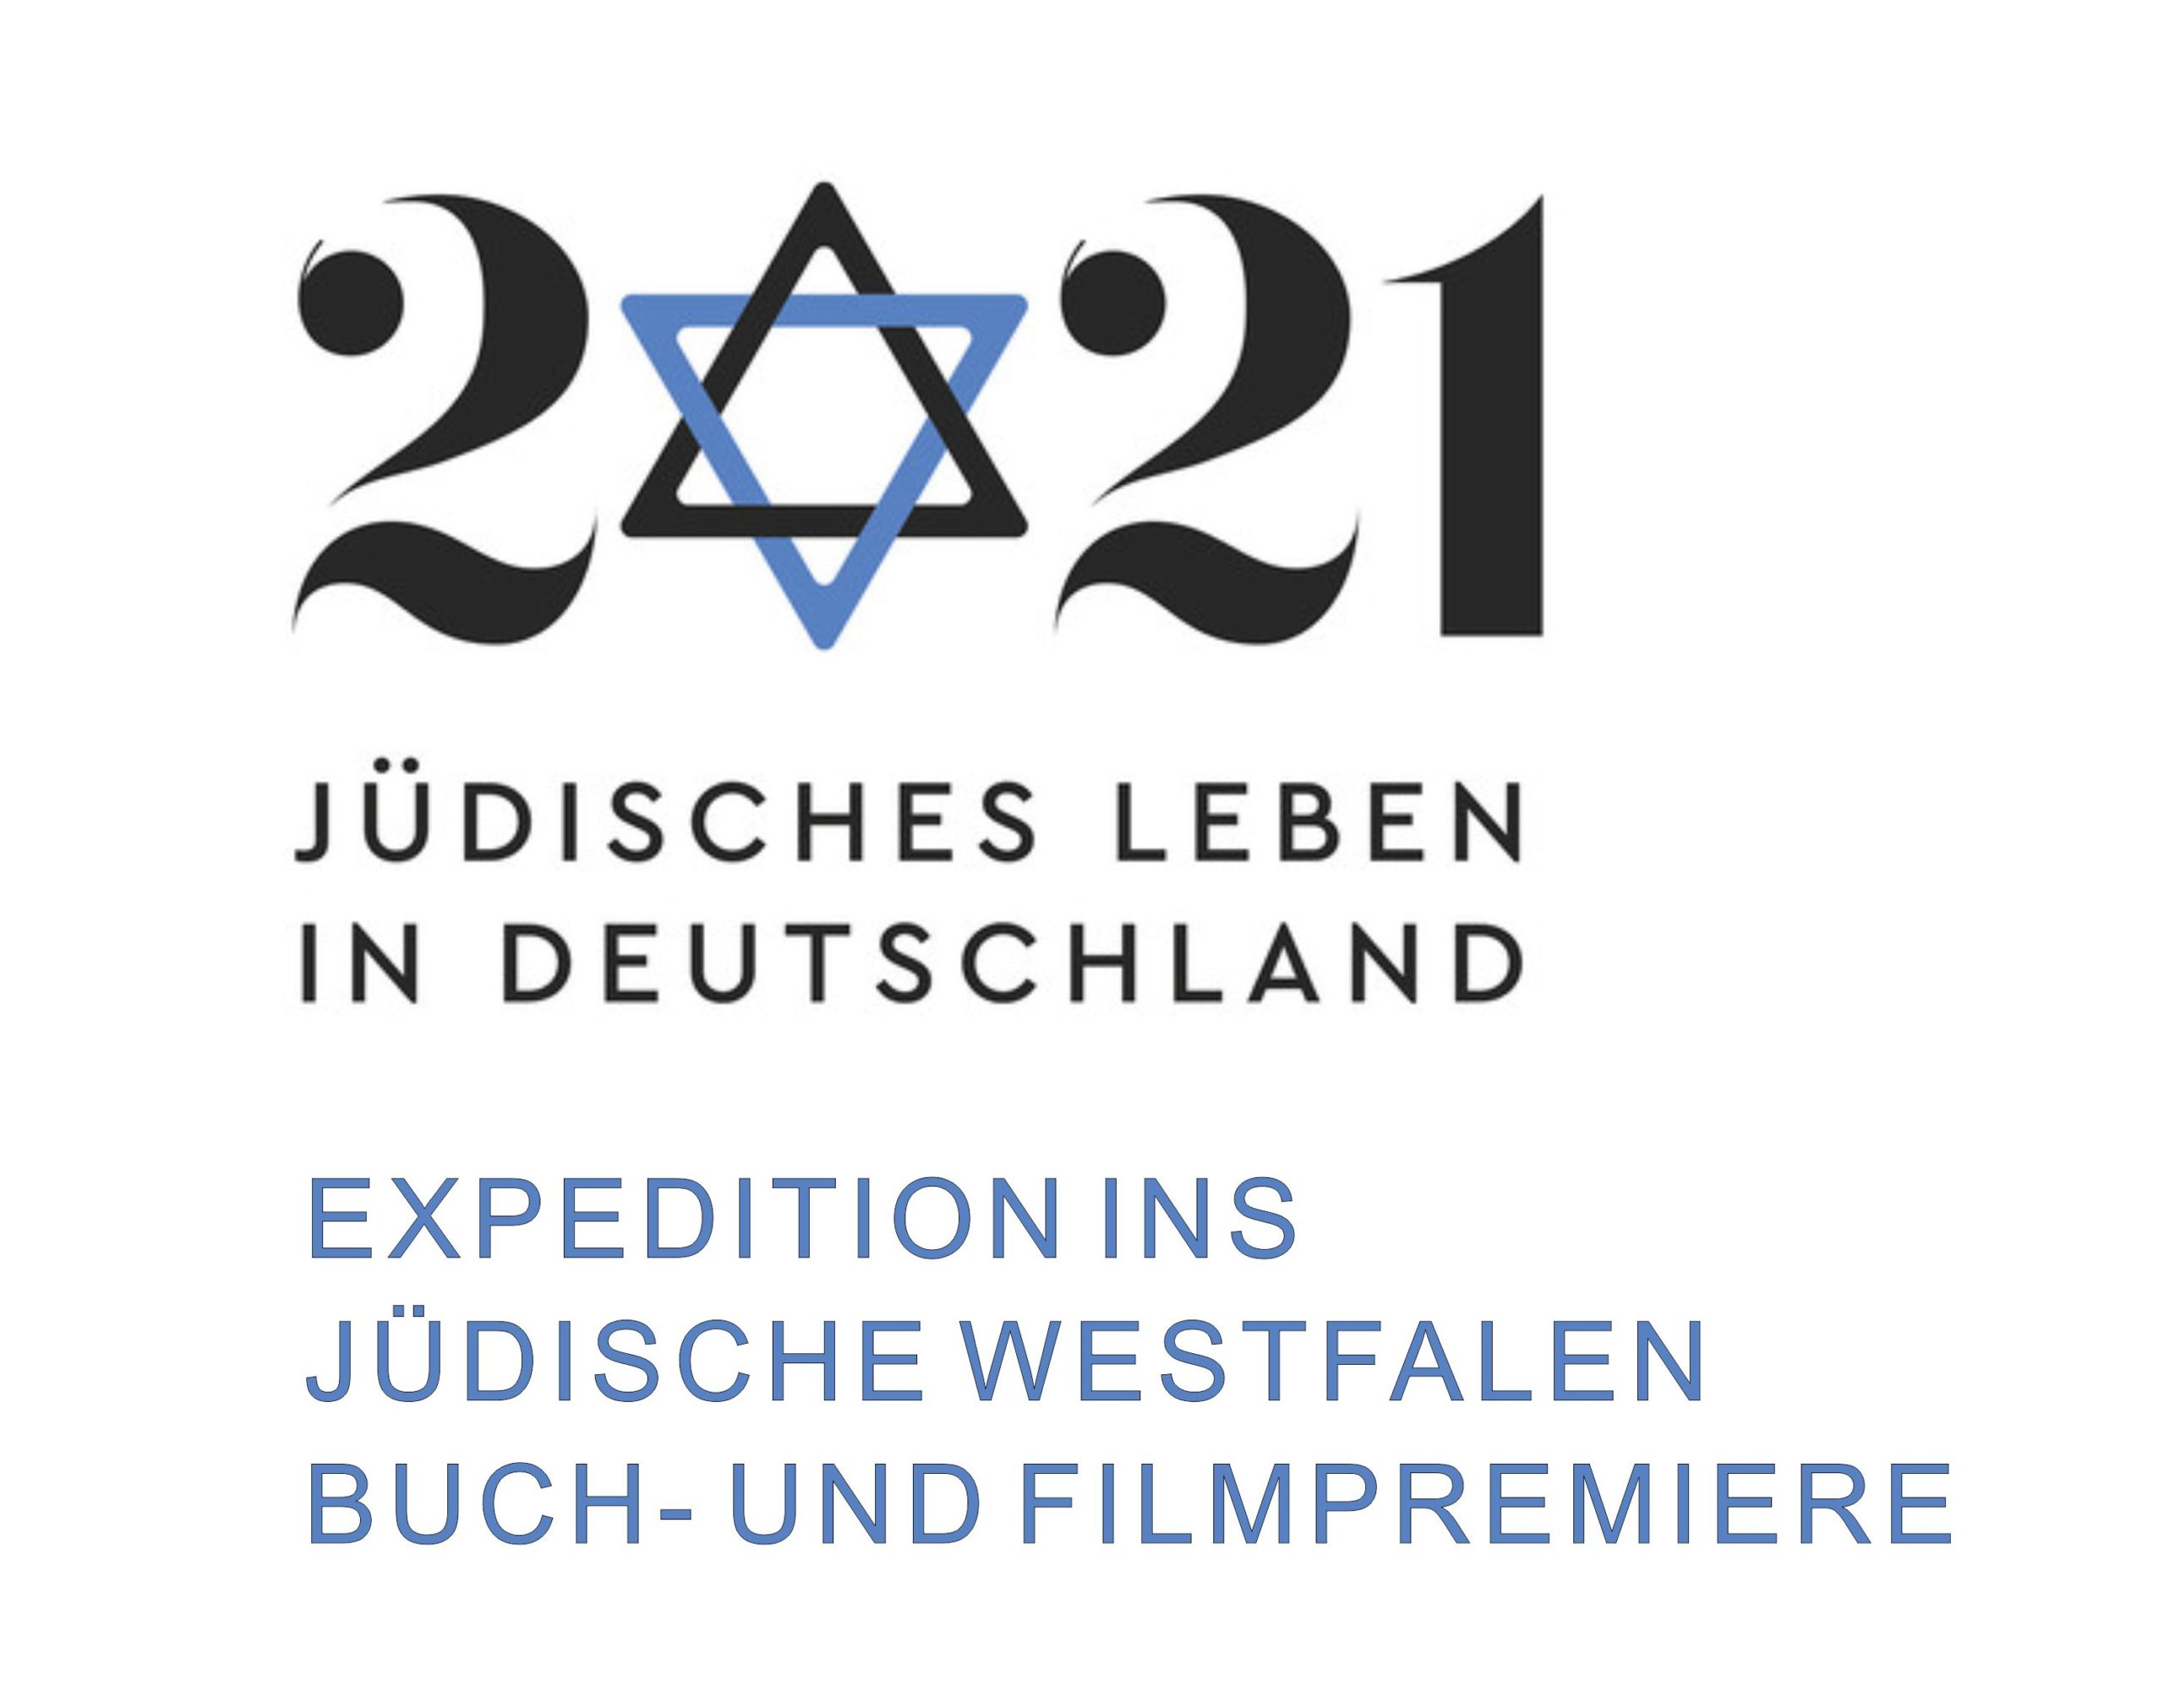 Buch- und Filmpremiere - Expedition ins jüdische Westfalen